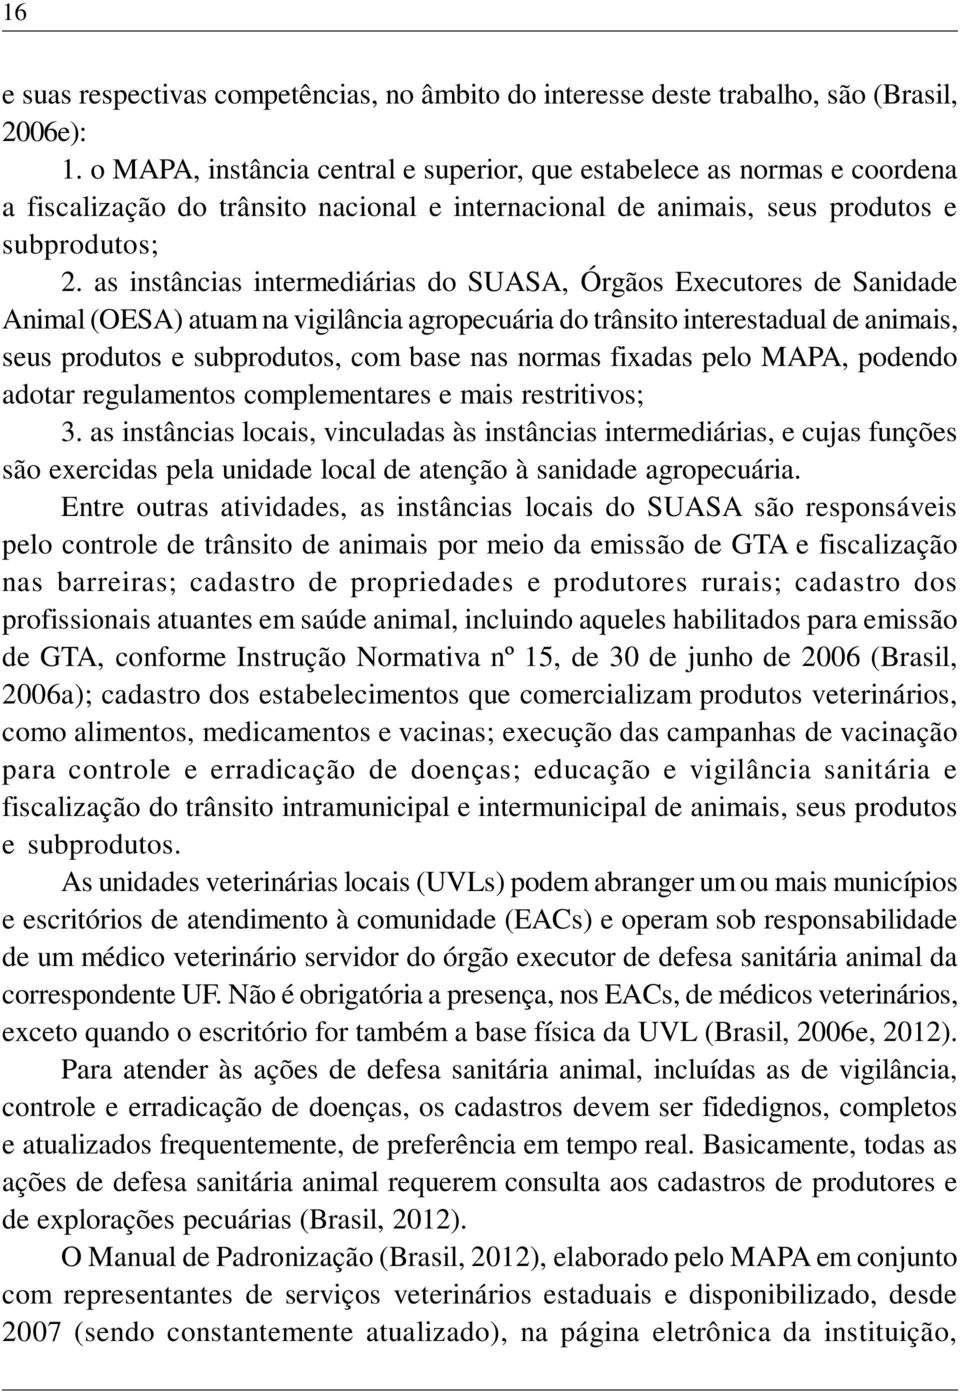 as instâncias intermediárias do SUASA, Órgãos Executores de Sanidade Animal (OESA) atuam na vigilância agropecuária do trânsito interestadual de animais, seus produtos e subprodutos, com base nas